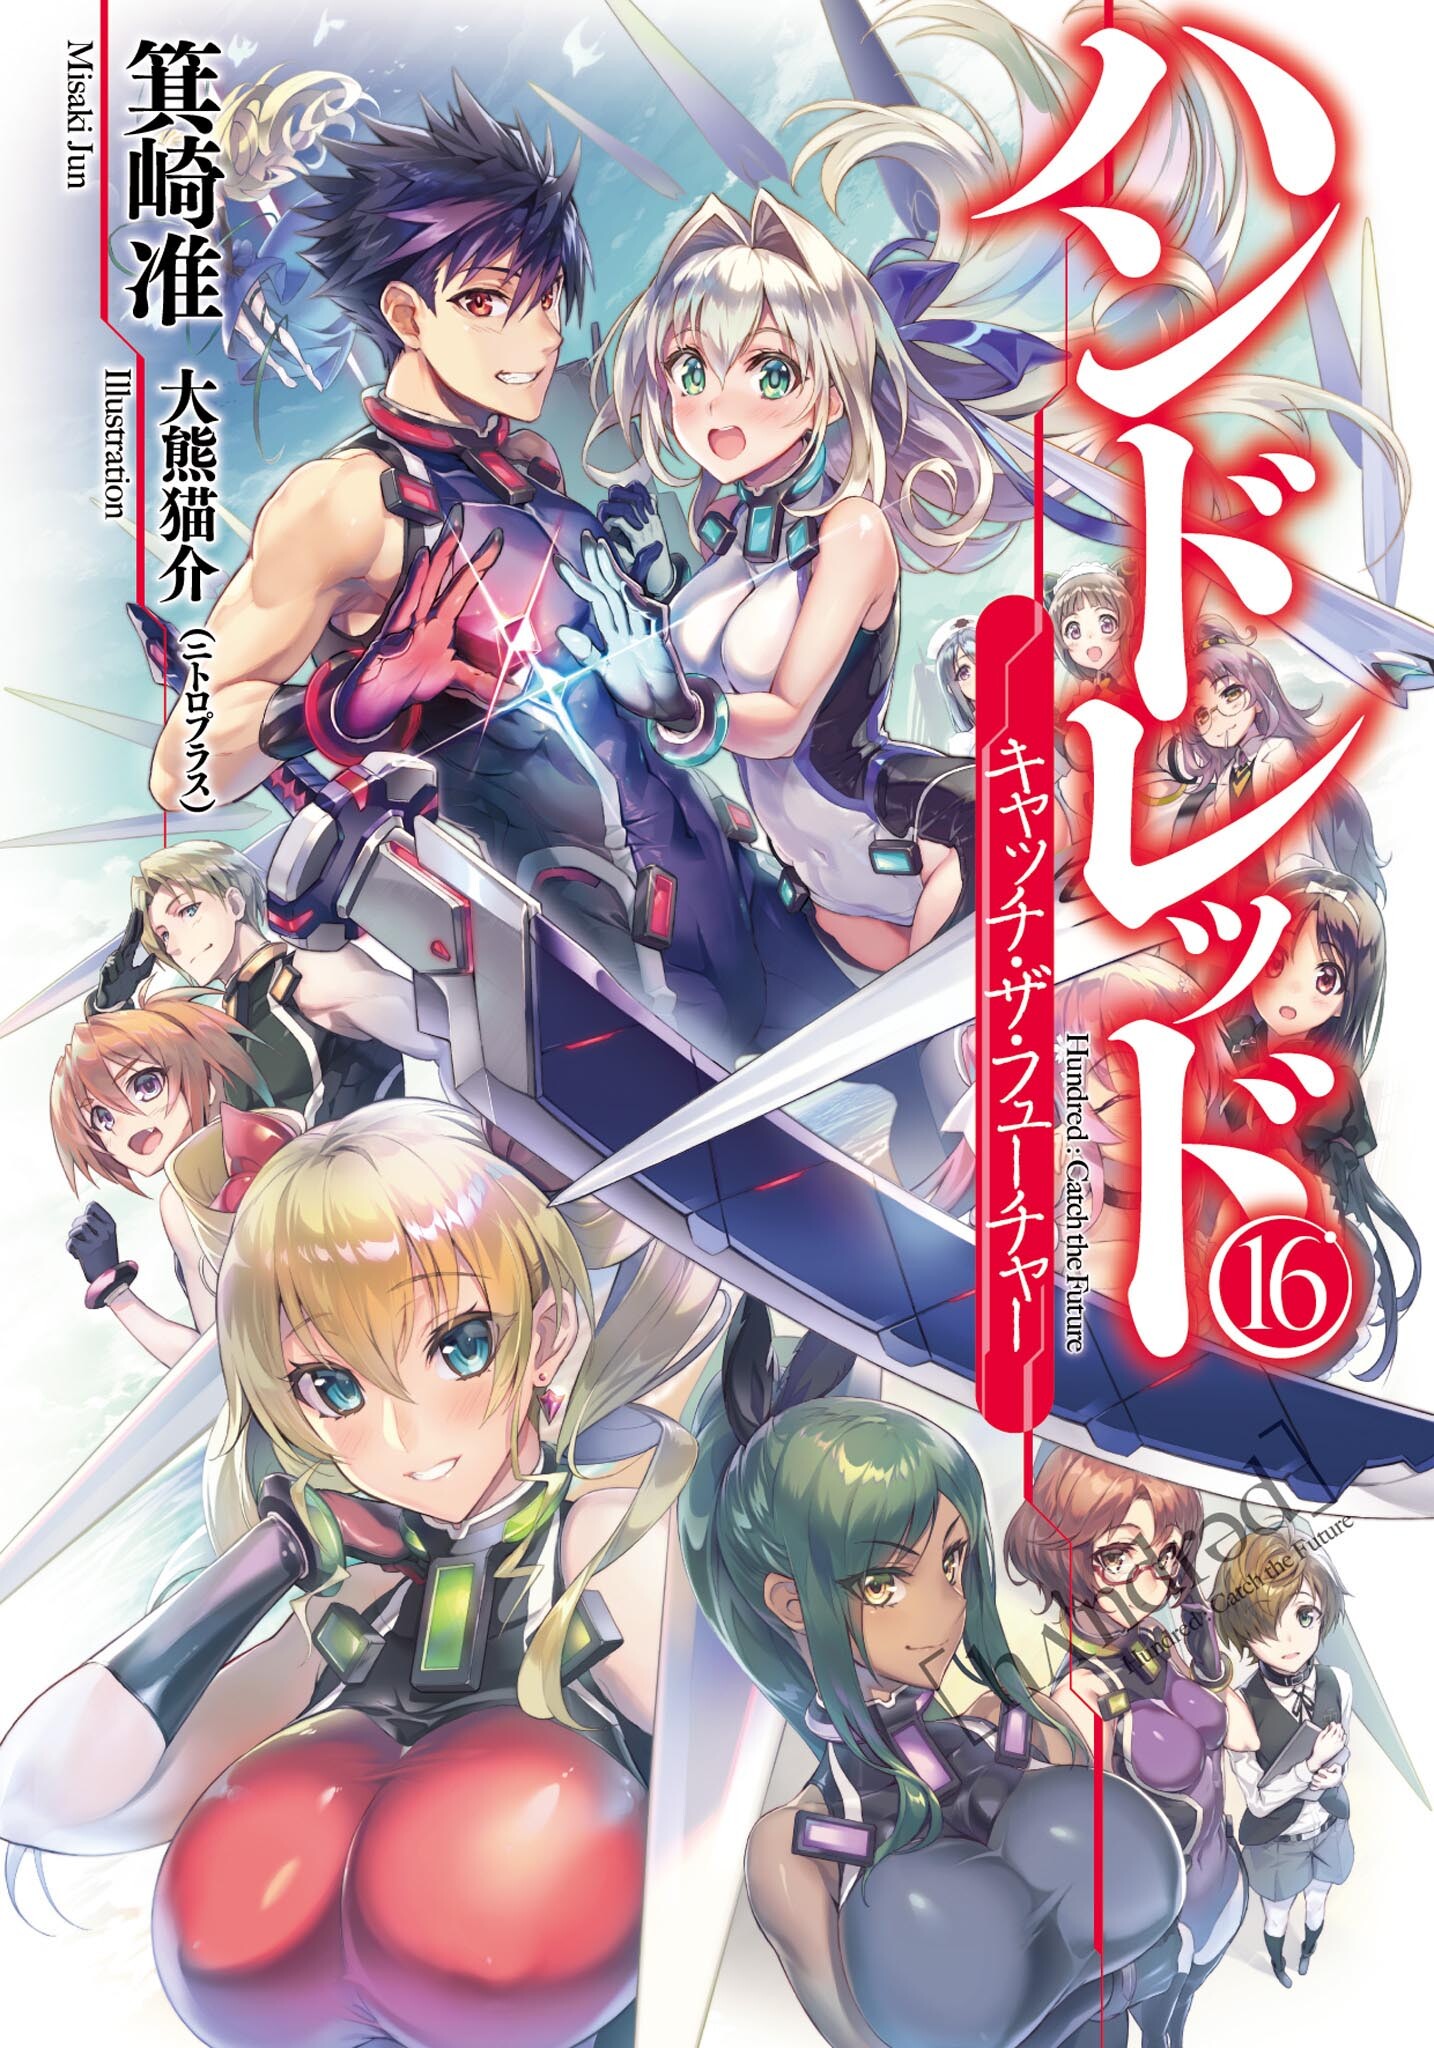 Hundred Light Novel Volume 16 , HD Wallpaper & Backgrounds